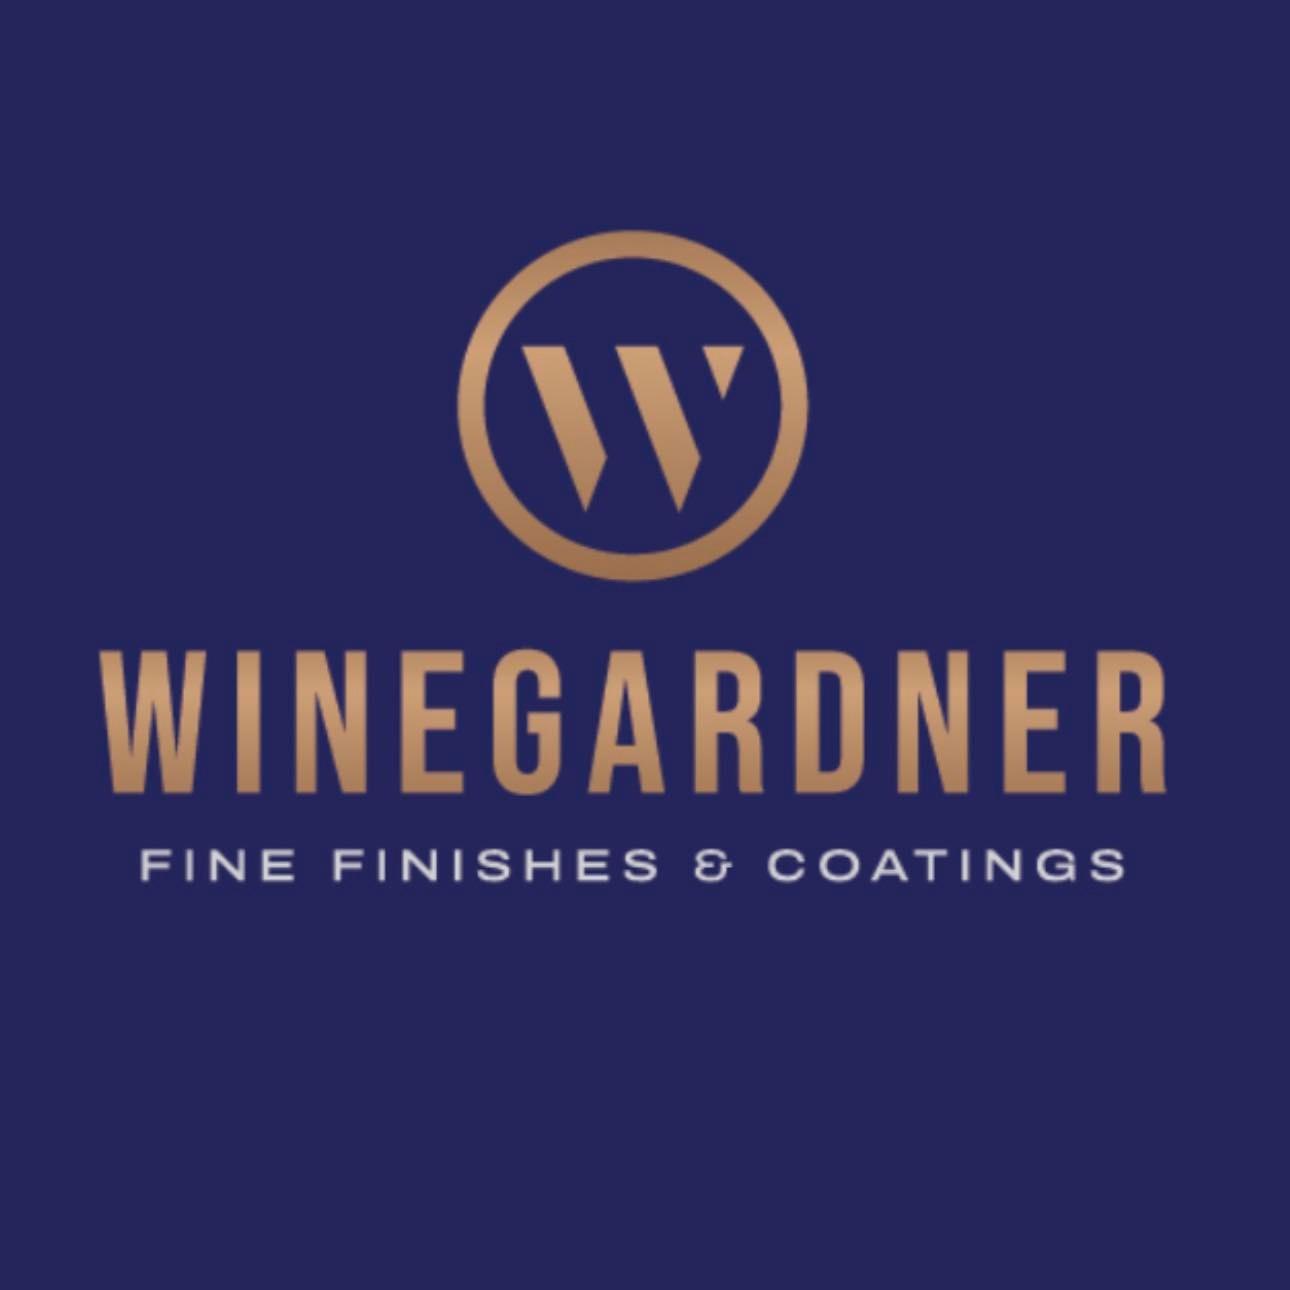 Winegardner Fine Finishes & Coatings